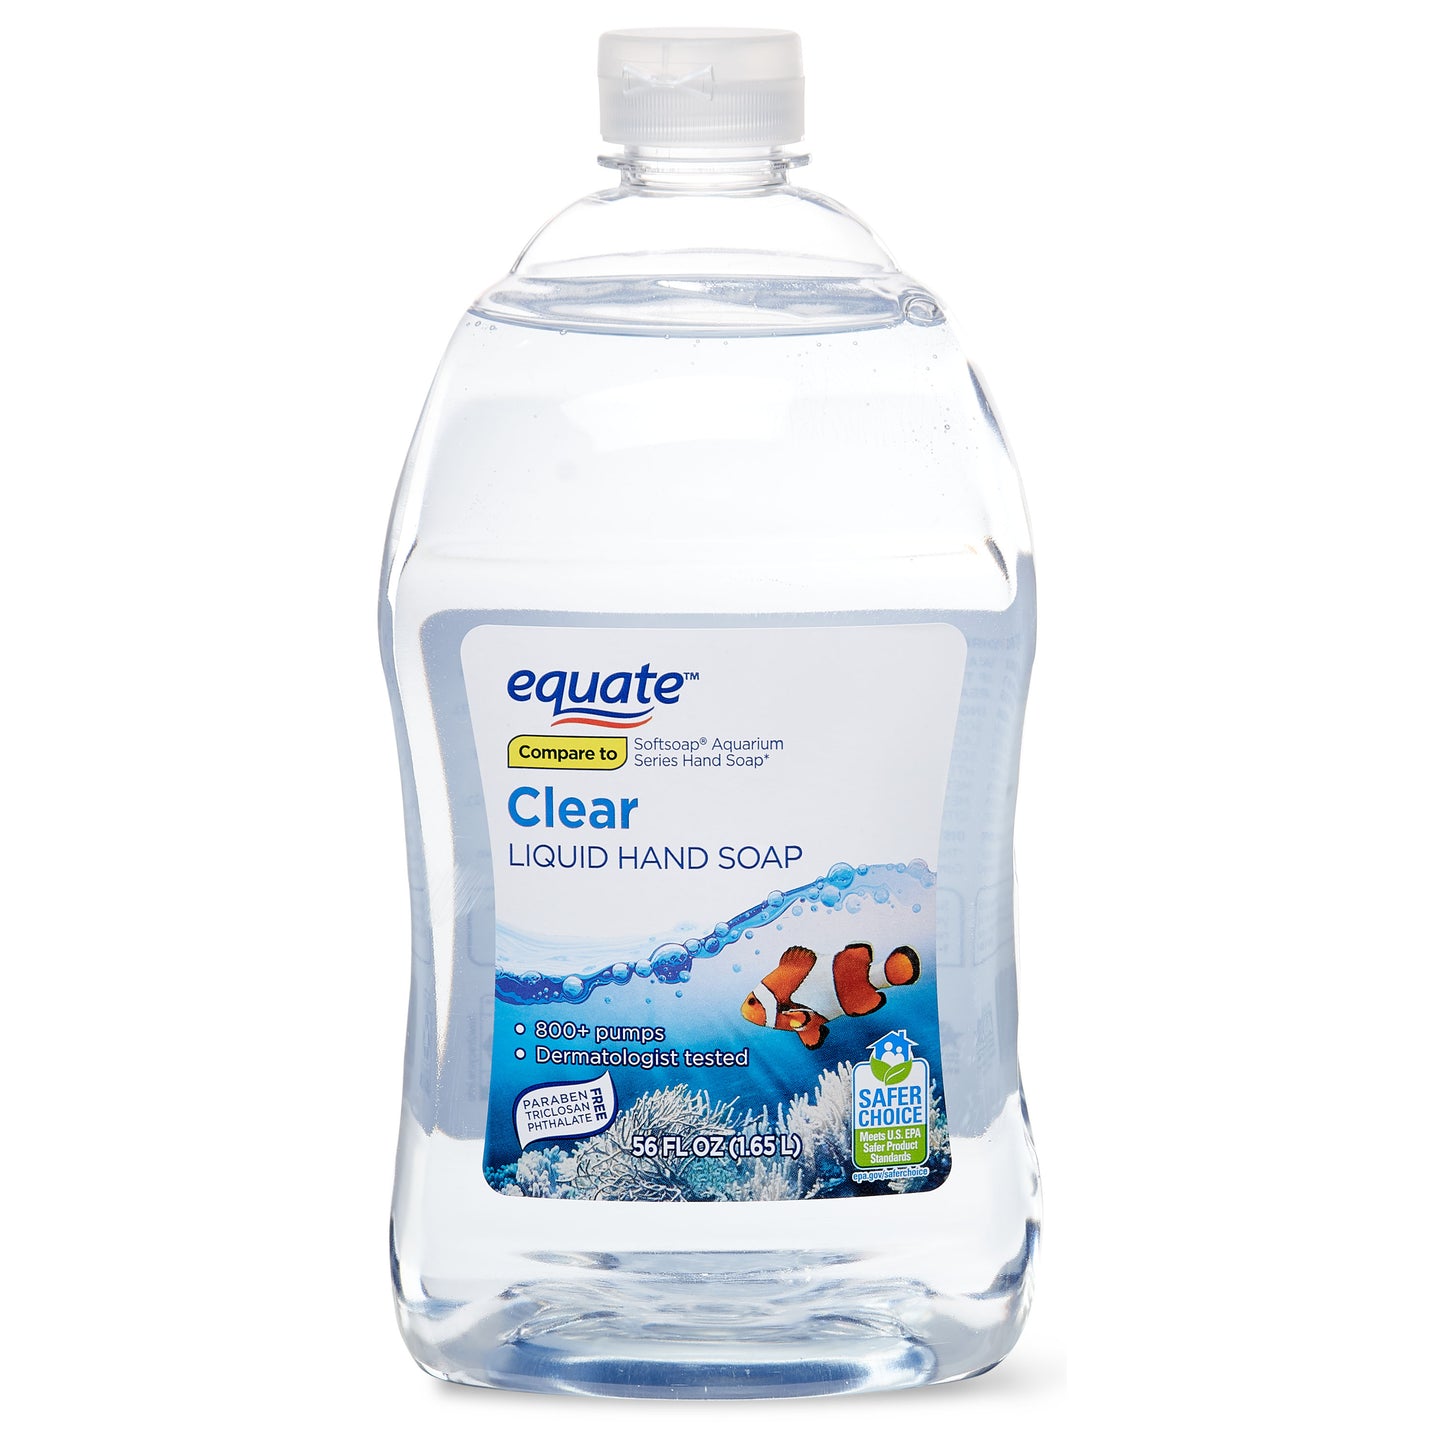 Equate Clear Liquid Hand Soap 56 oz 1.65 L Refill